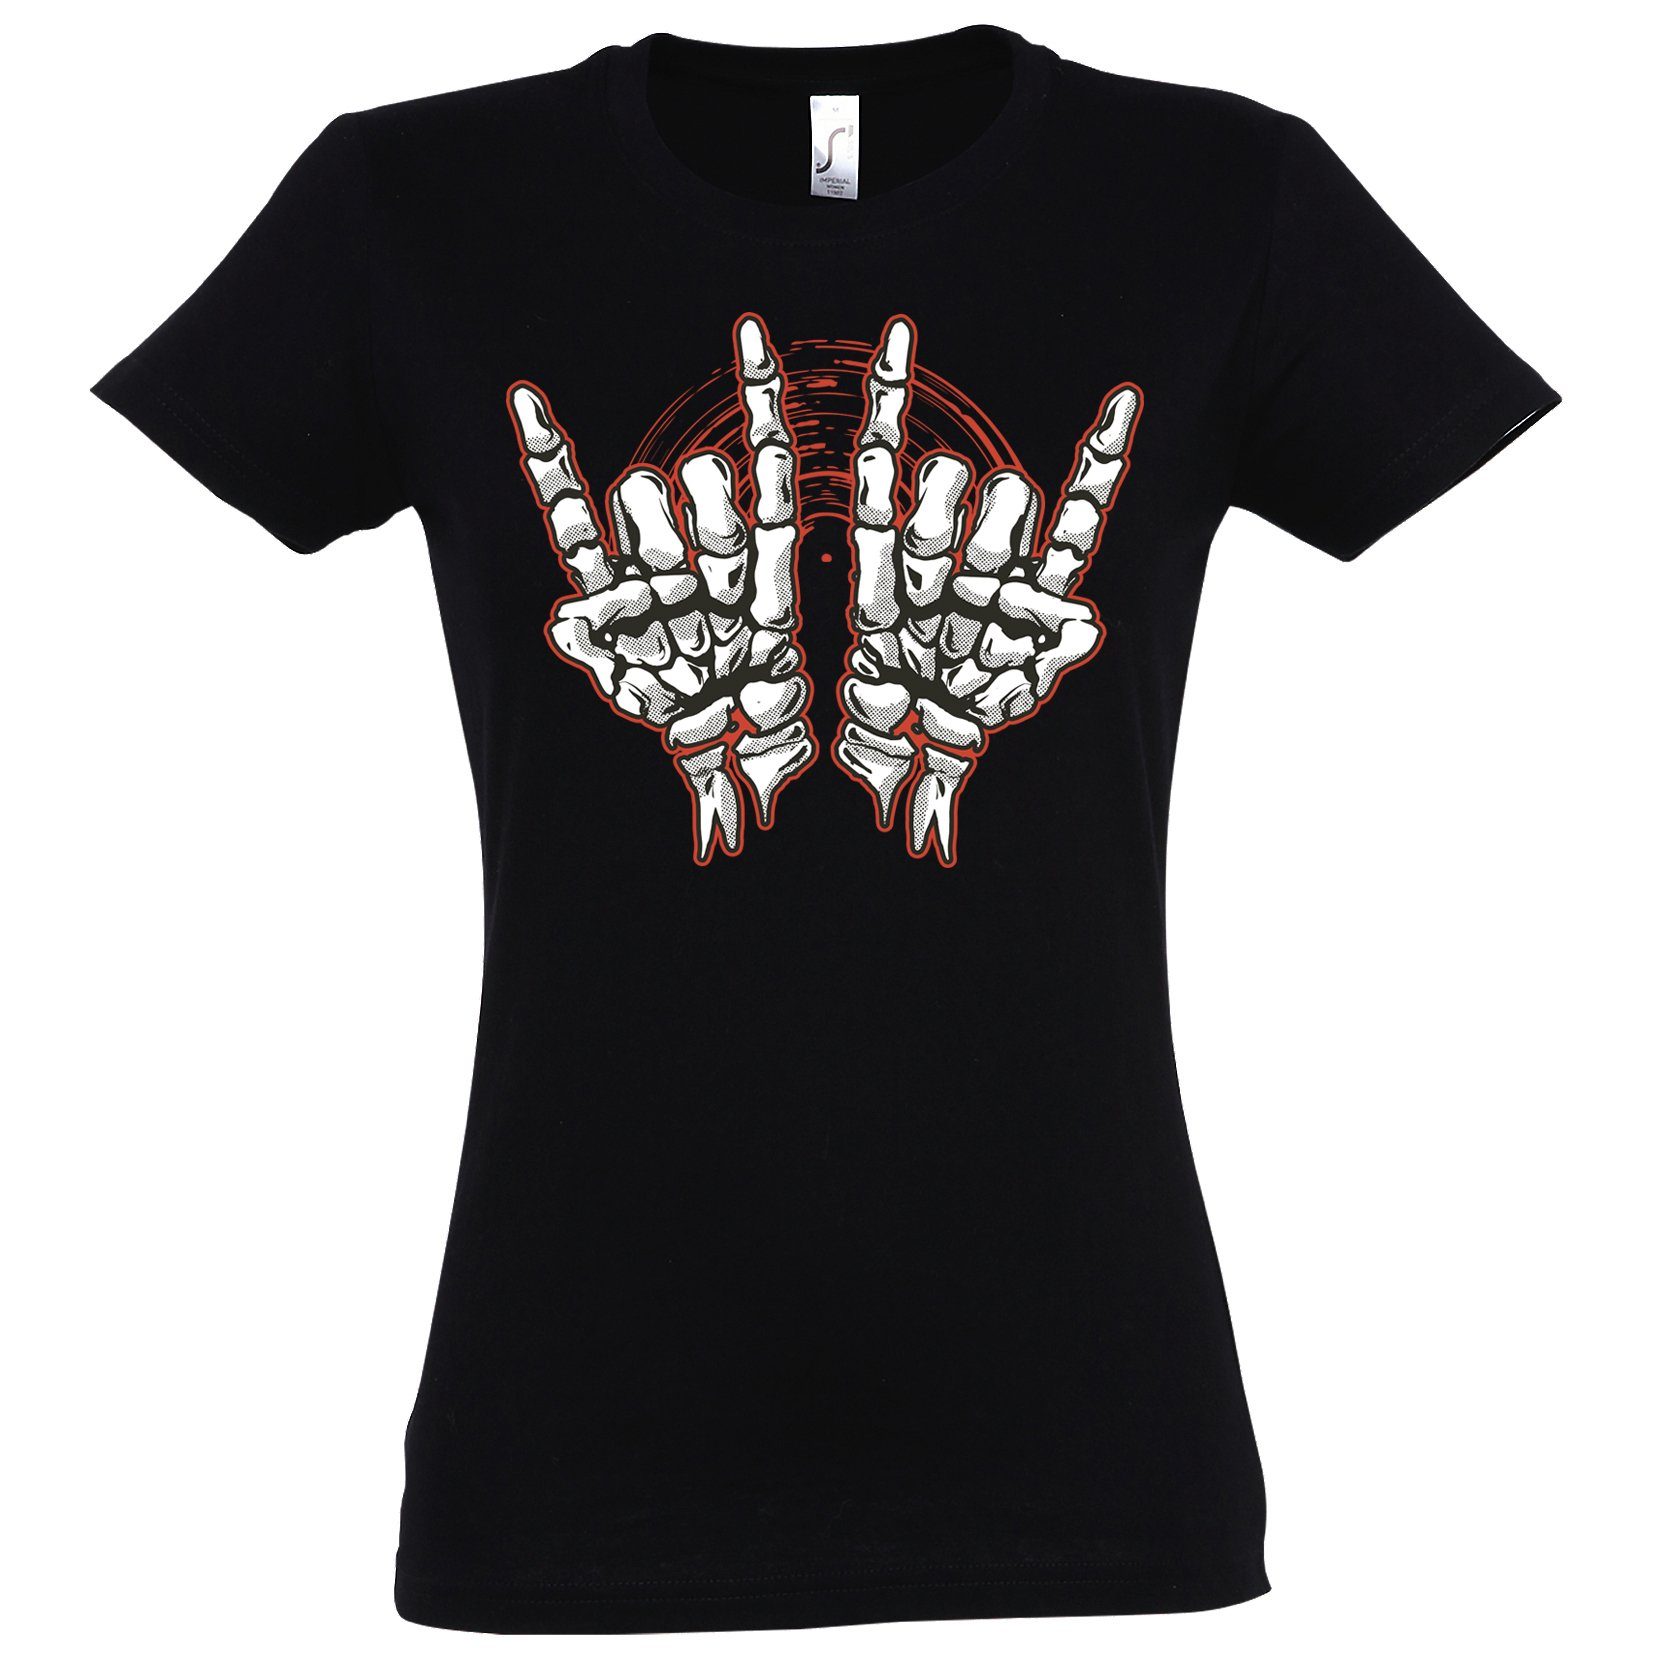 Youth Designz T-Shirt Skelett Hand Rock'n'Roll Damen Shirt Horror im Fun-Look Mit modischem Print Schwarz